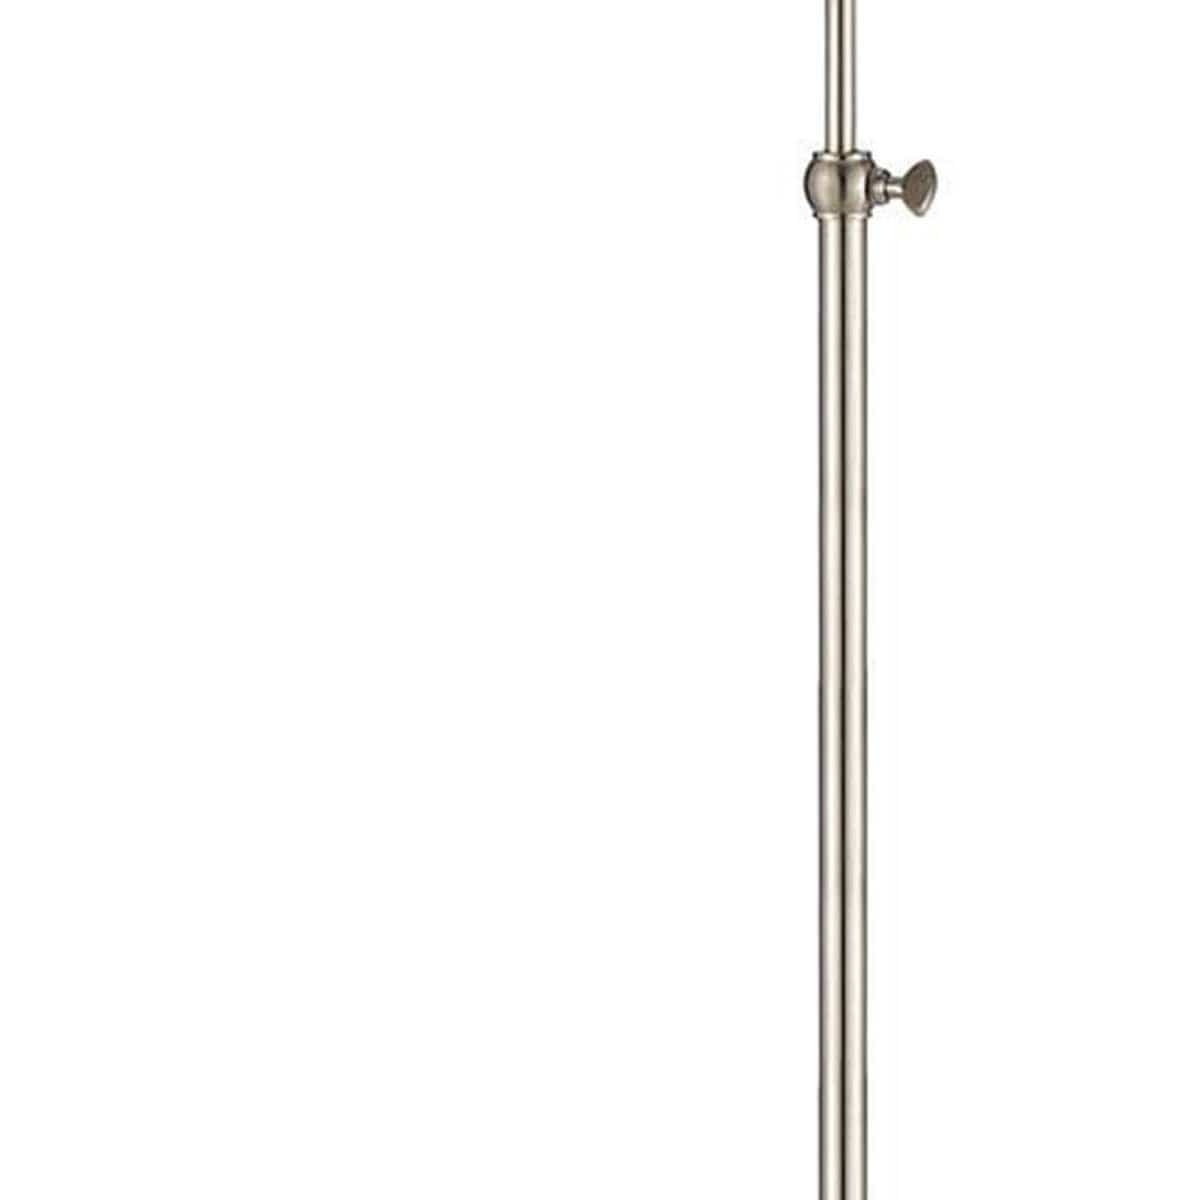 Benzara Metal Round 62" Floor Lamp With Adjustable Pole, Silver By Benzara Floor Lamps BM225099